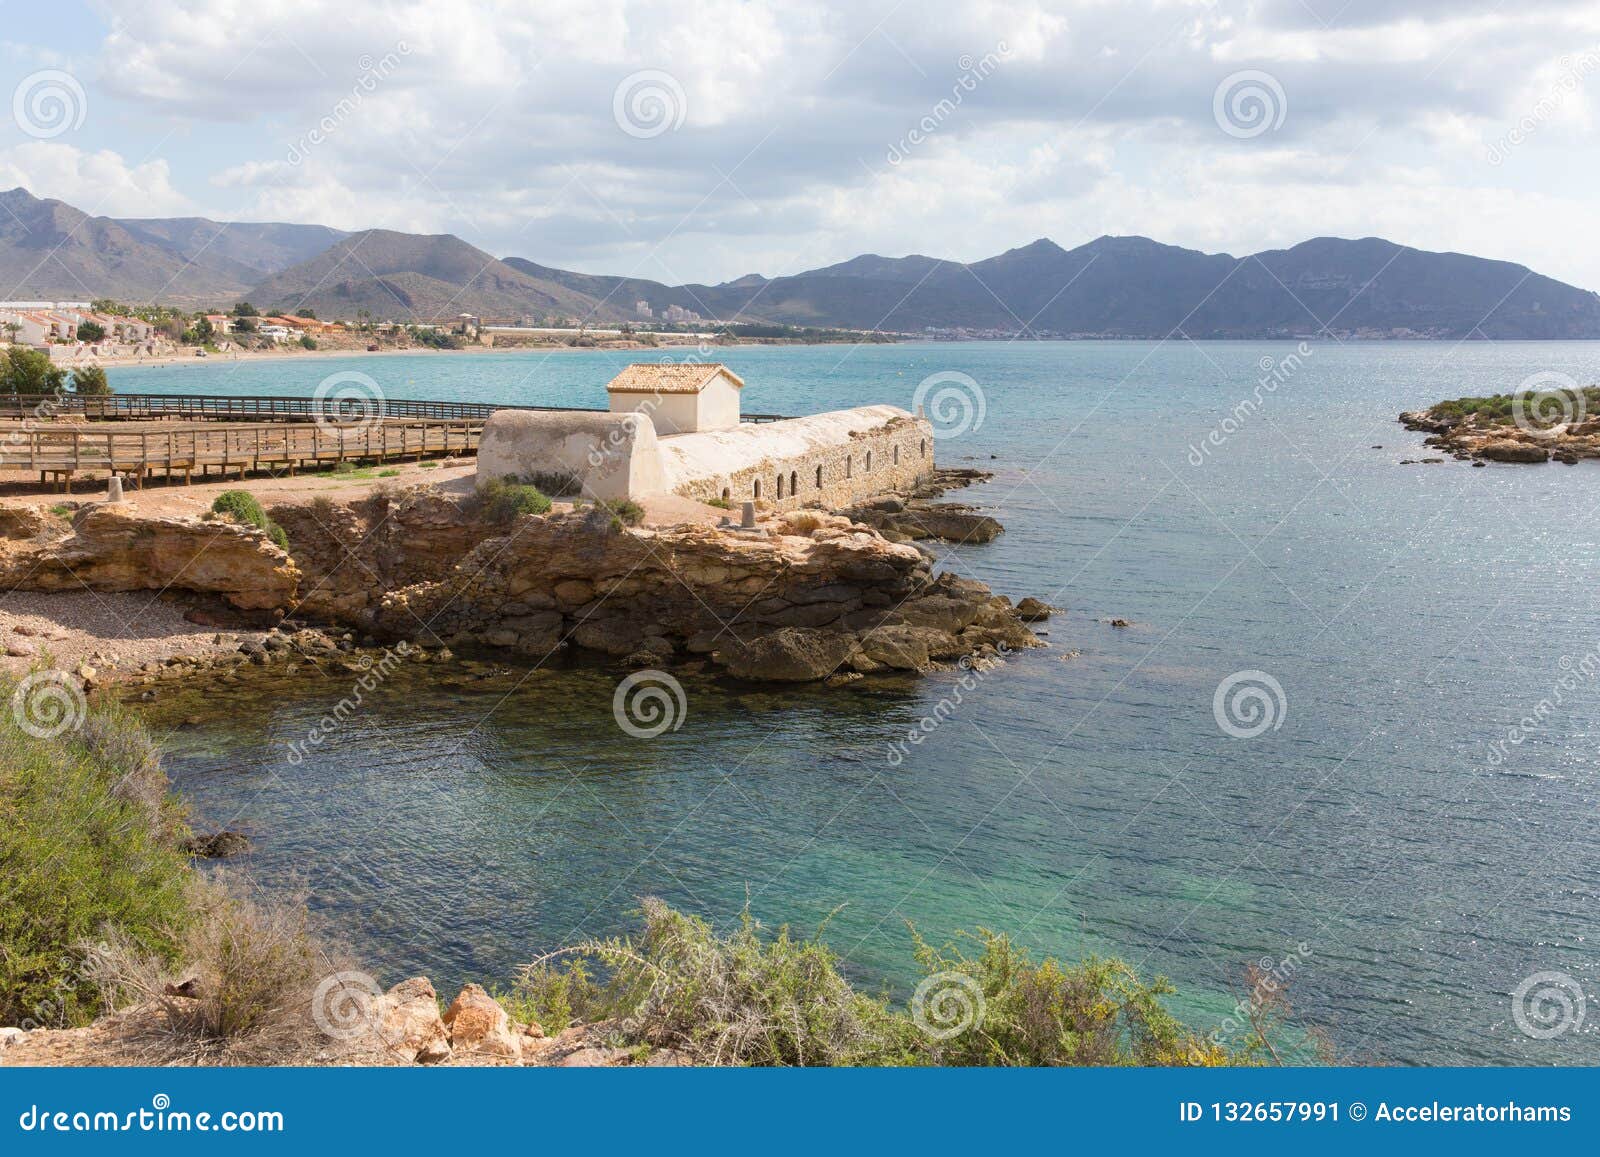 la isla plana murcia spain bano de la marrana historic tourist attraction in this a coast village